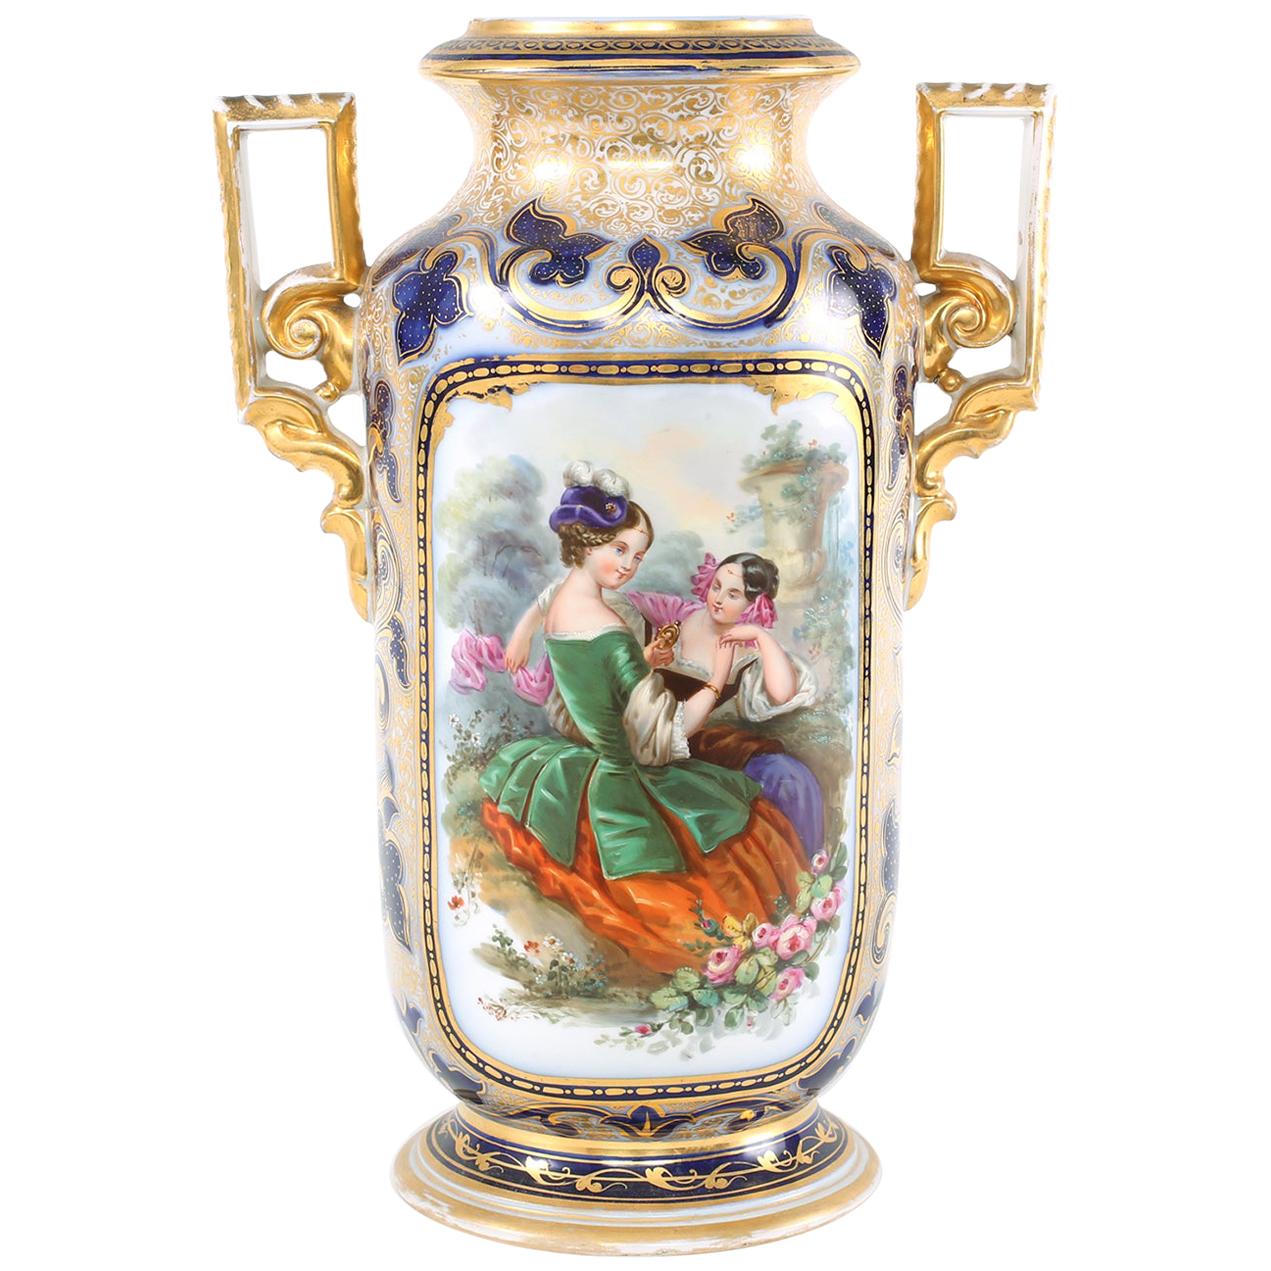  French Porcelain Decorative Vase  / Side Handles For Sale